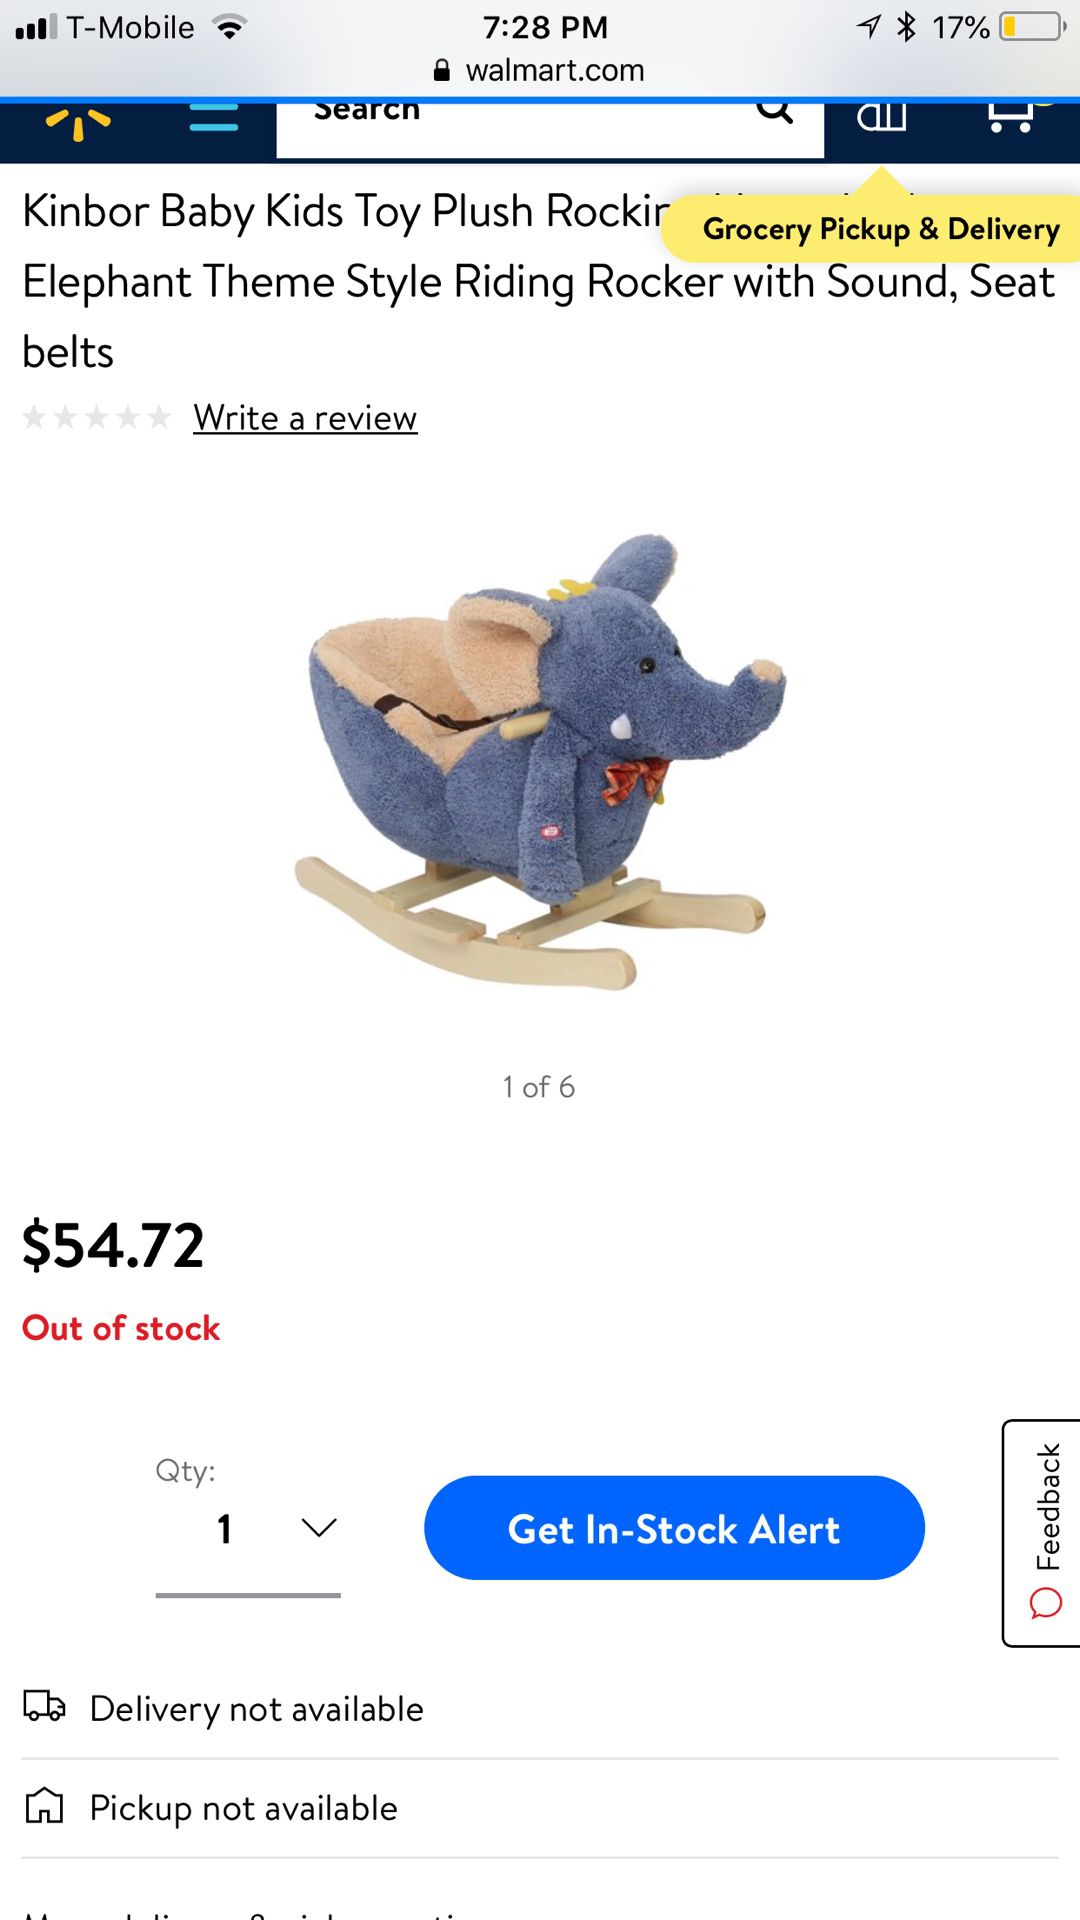 Kinbor Baby Kids Toy Plush Rocking Elephant